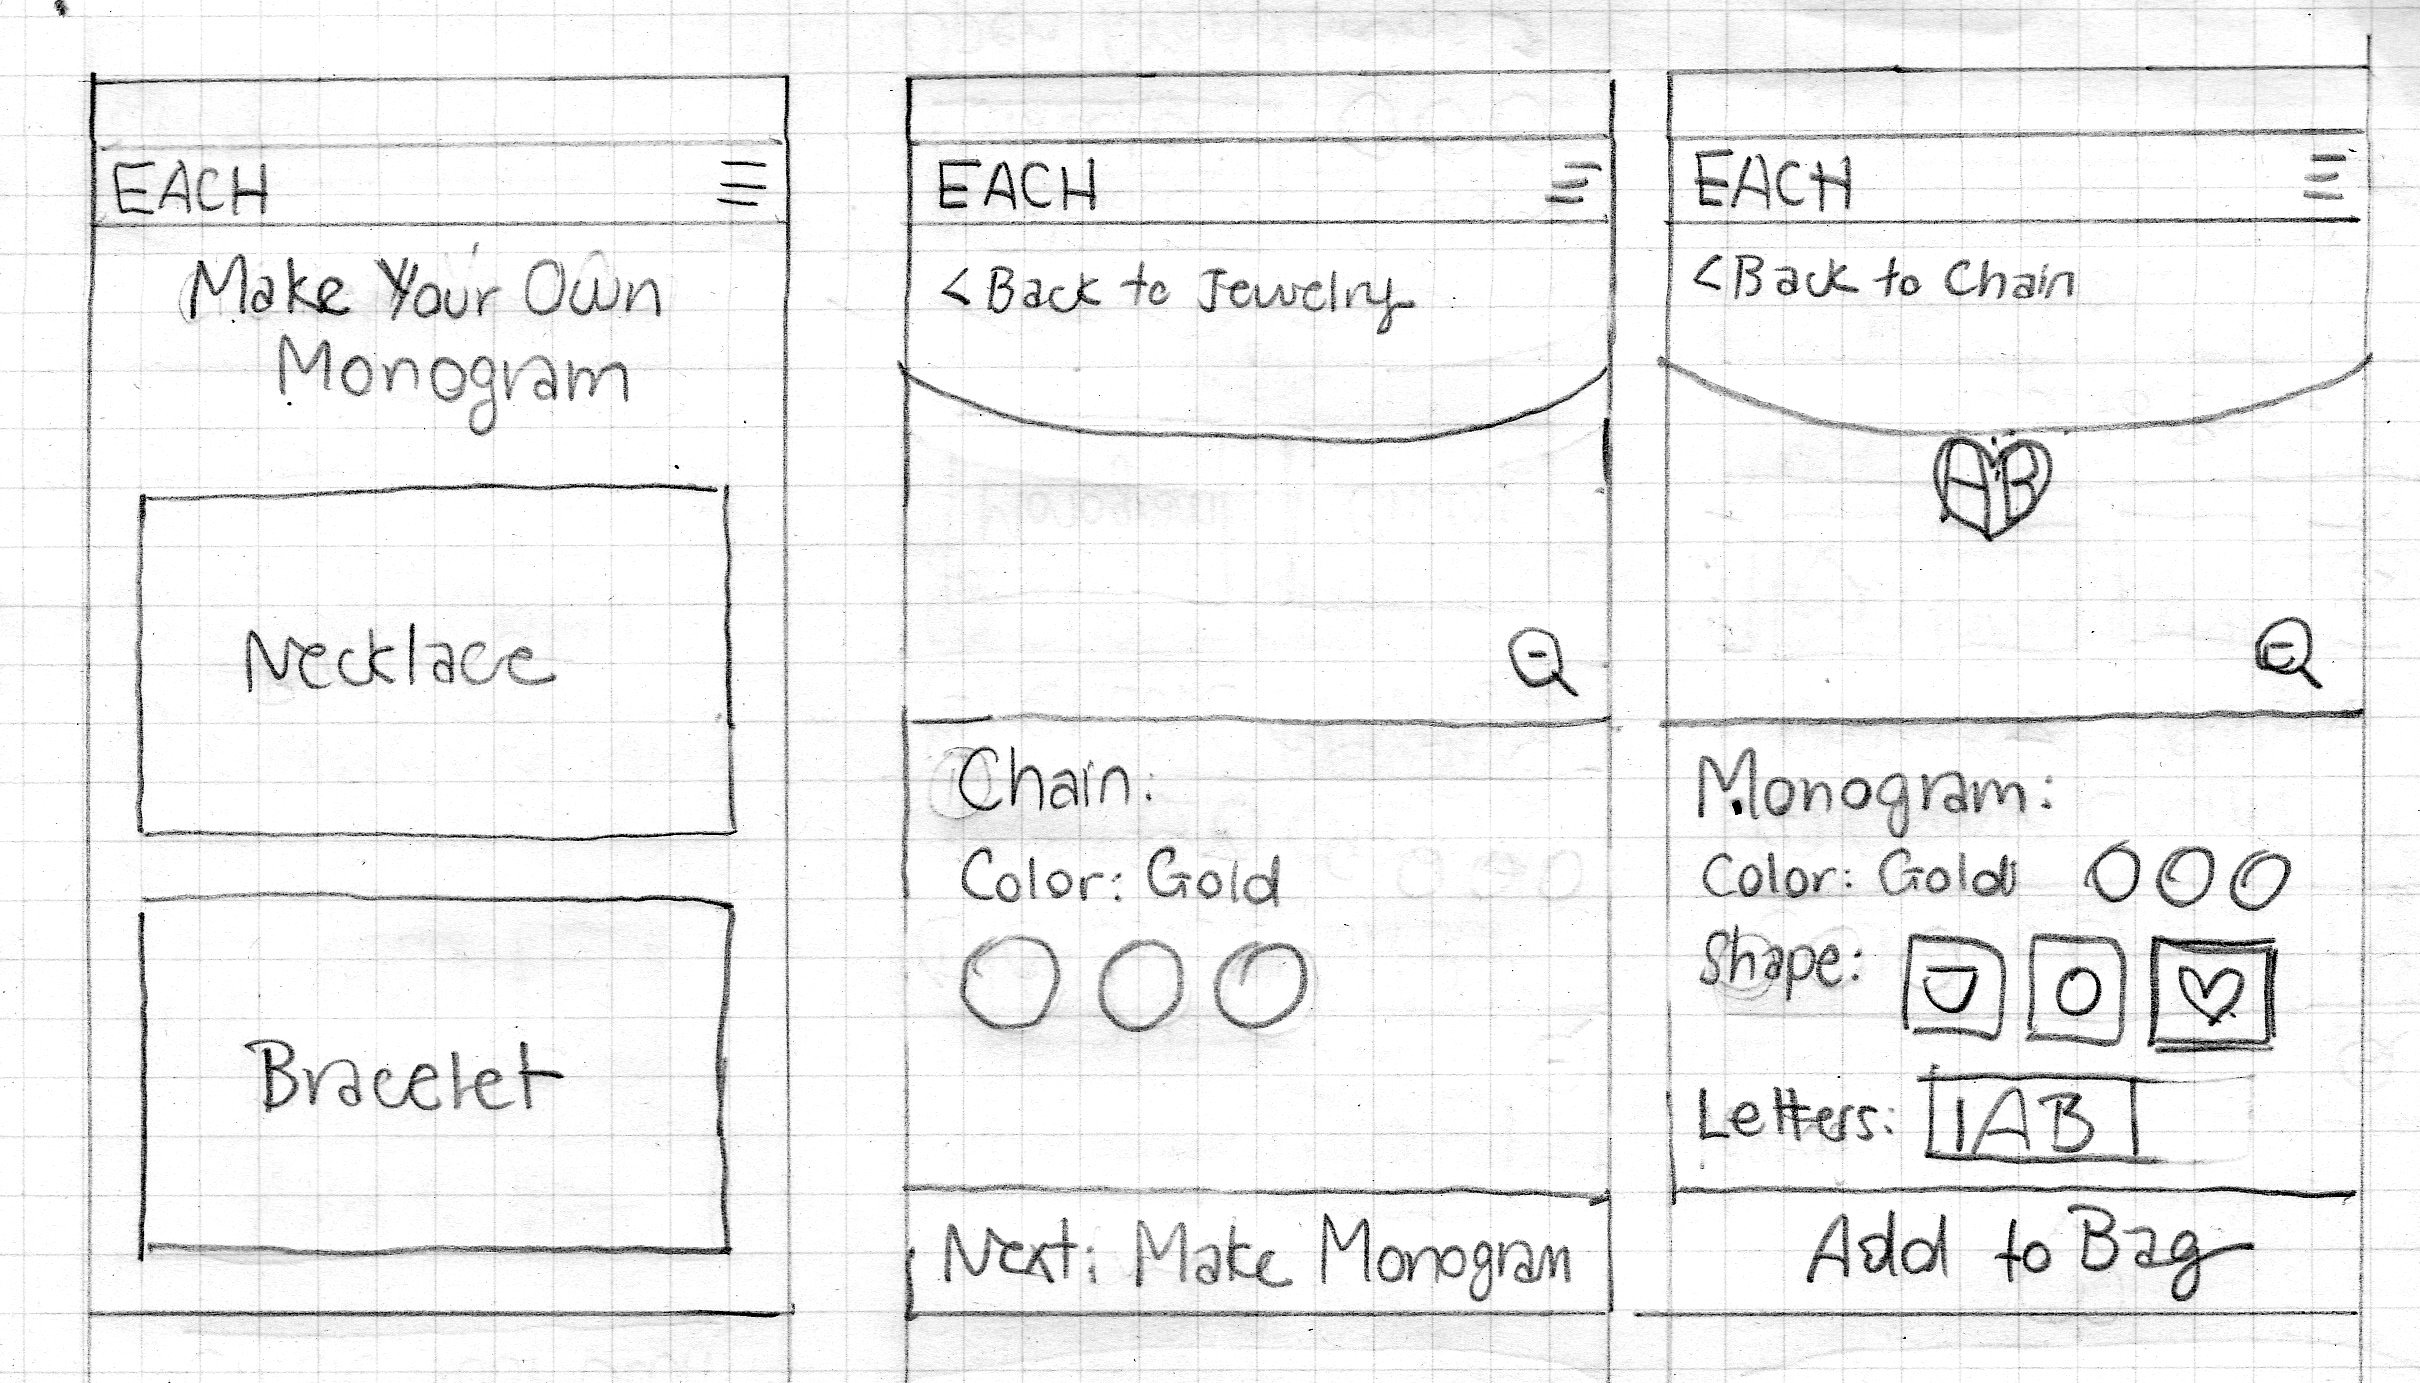 Each_custom_sketch6.jpg